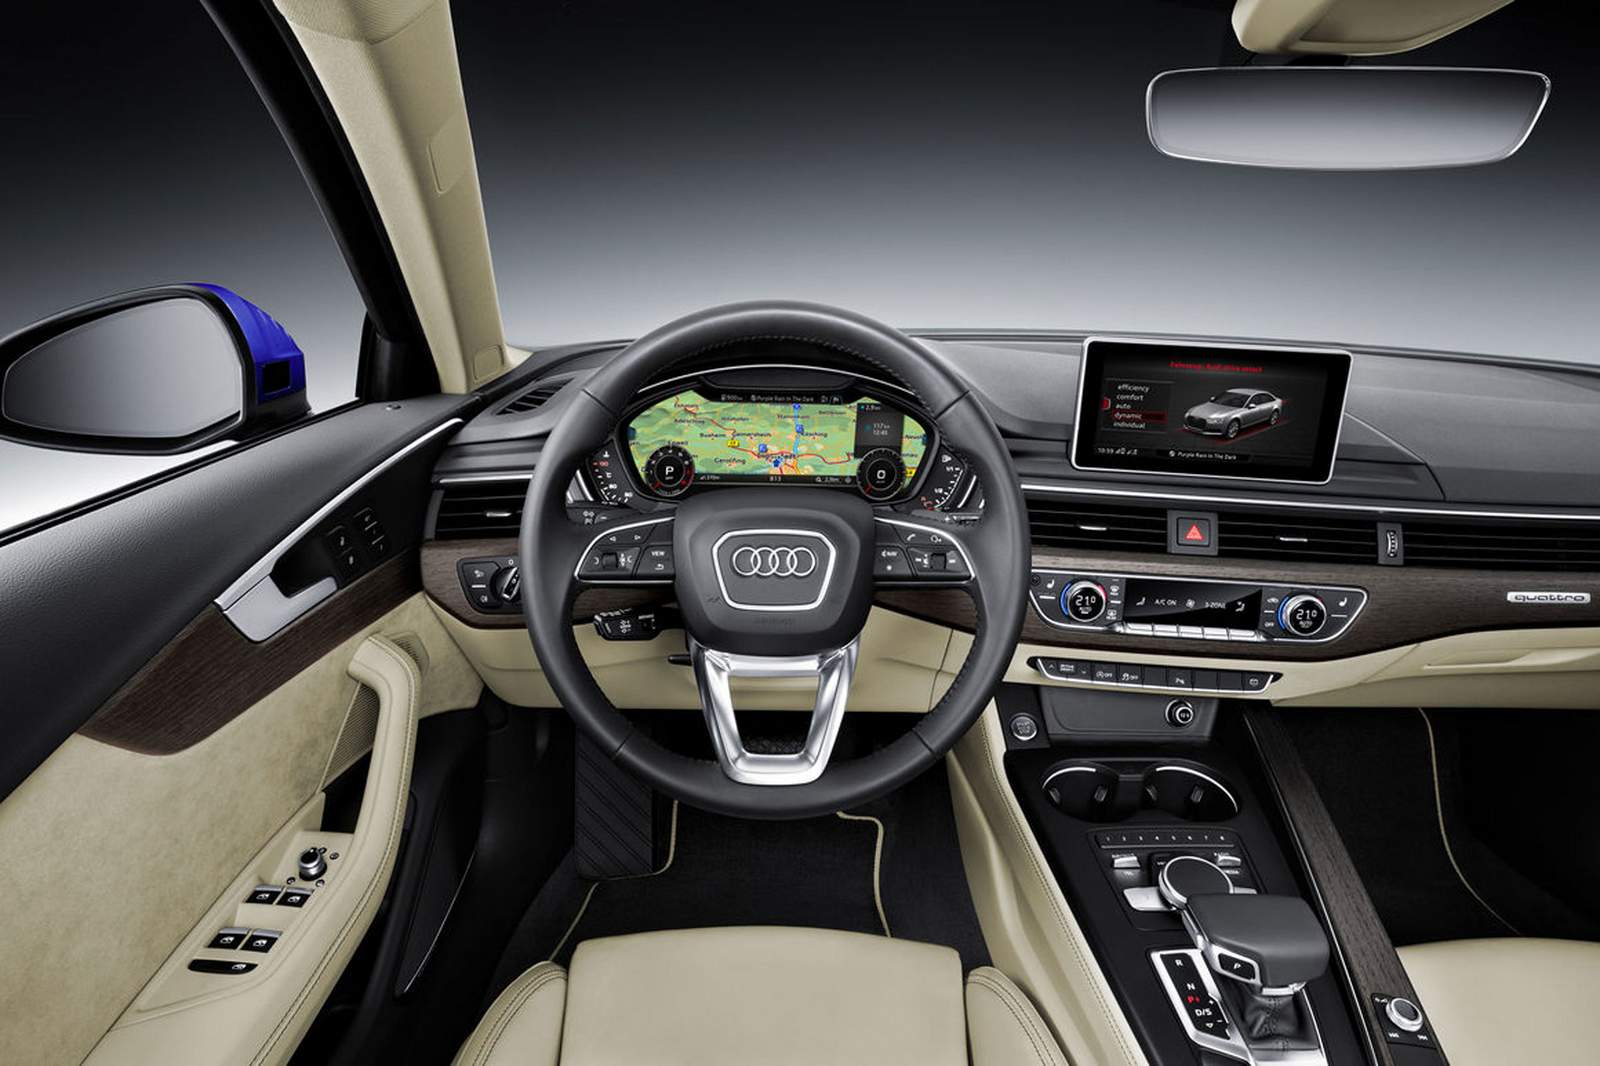 Novo Audi A4 2016: fotos, vídeos e especificações oficiais